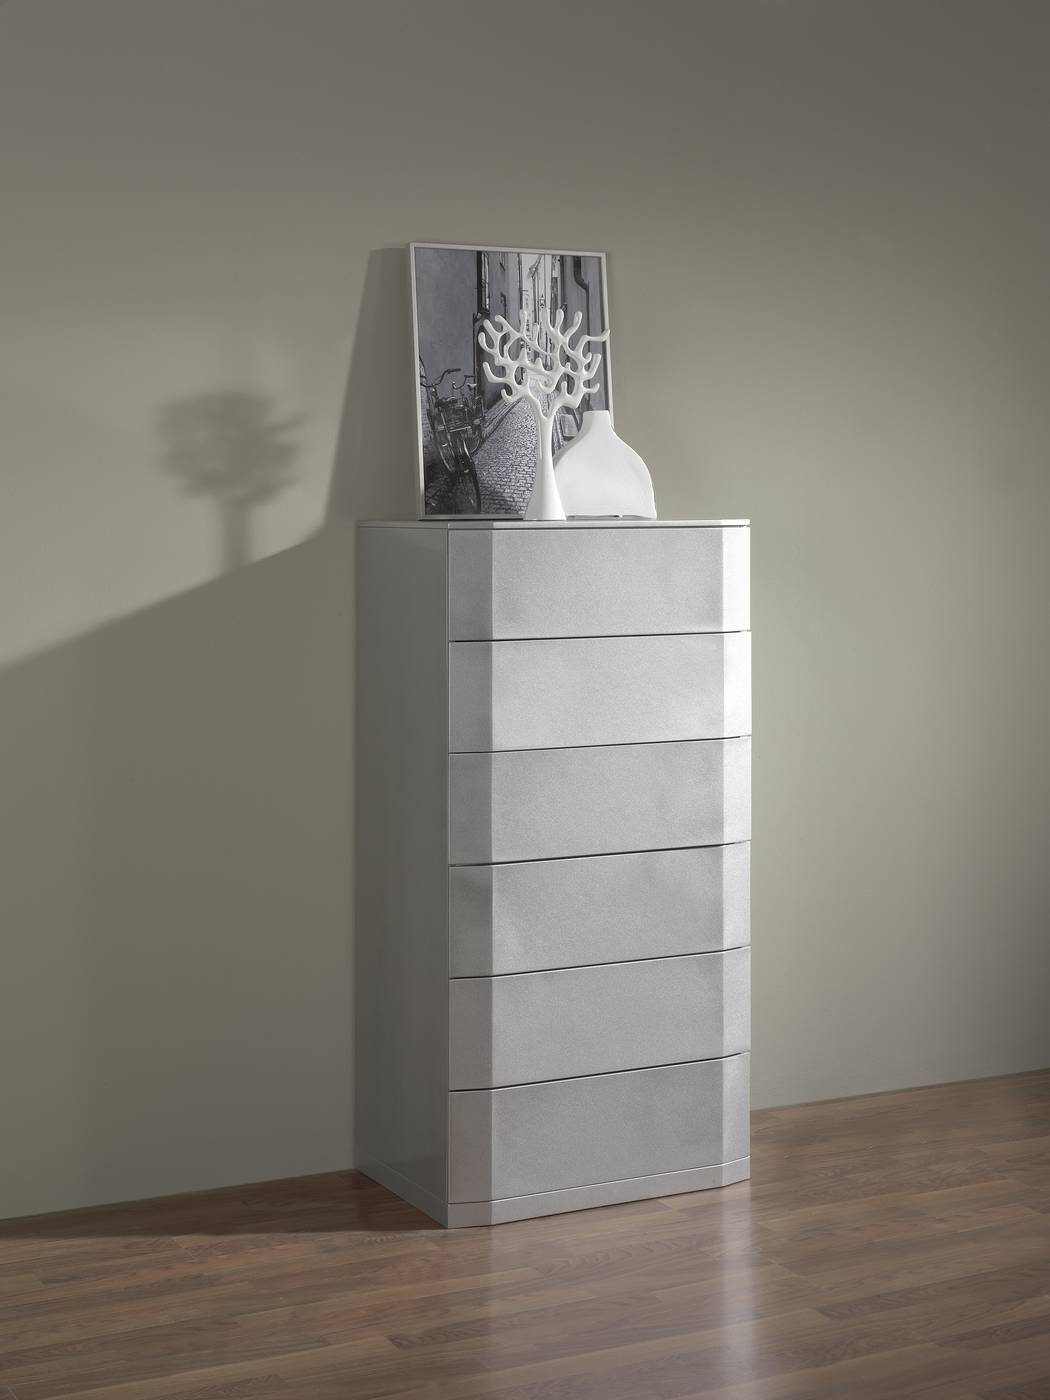 Sifonier minimalista de 6 cajones, lacado en color plata brillo